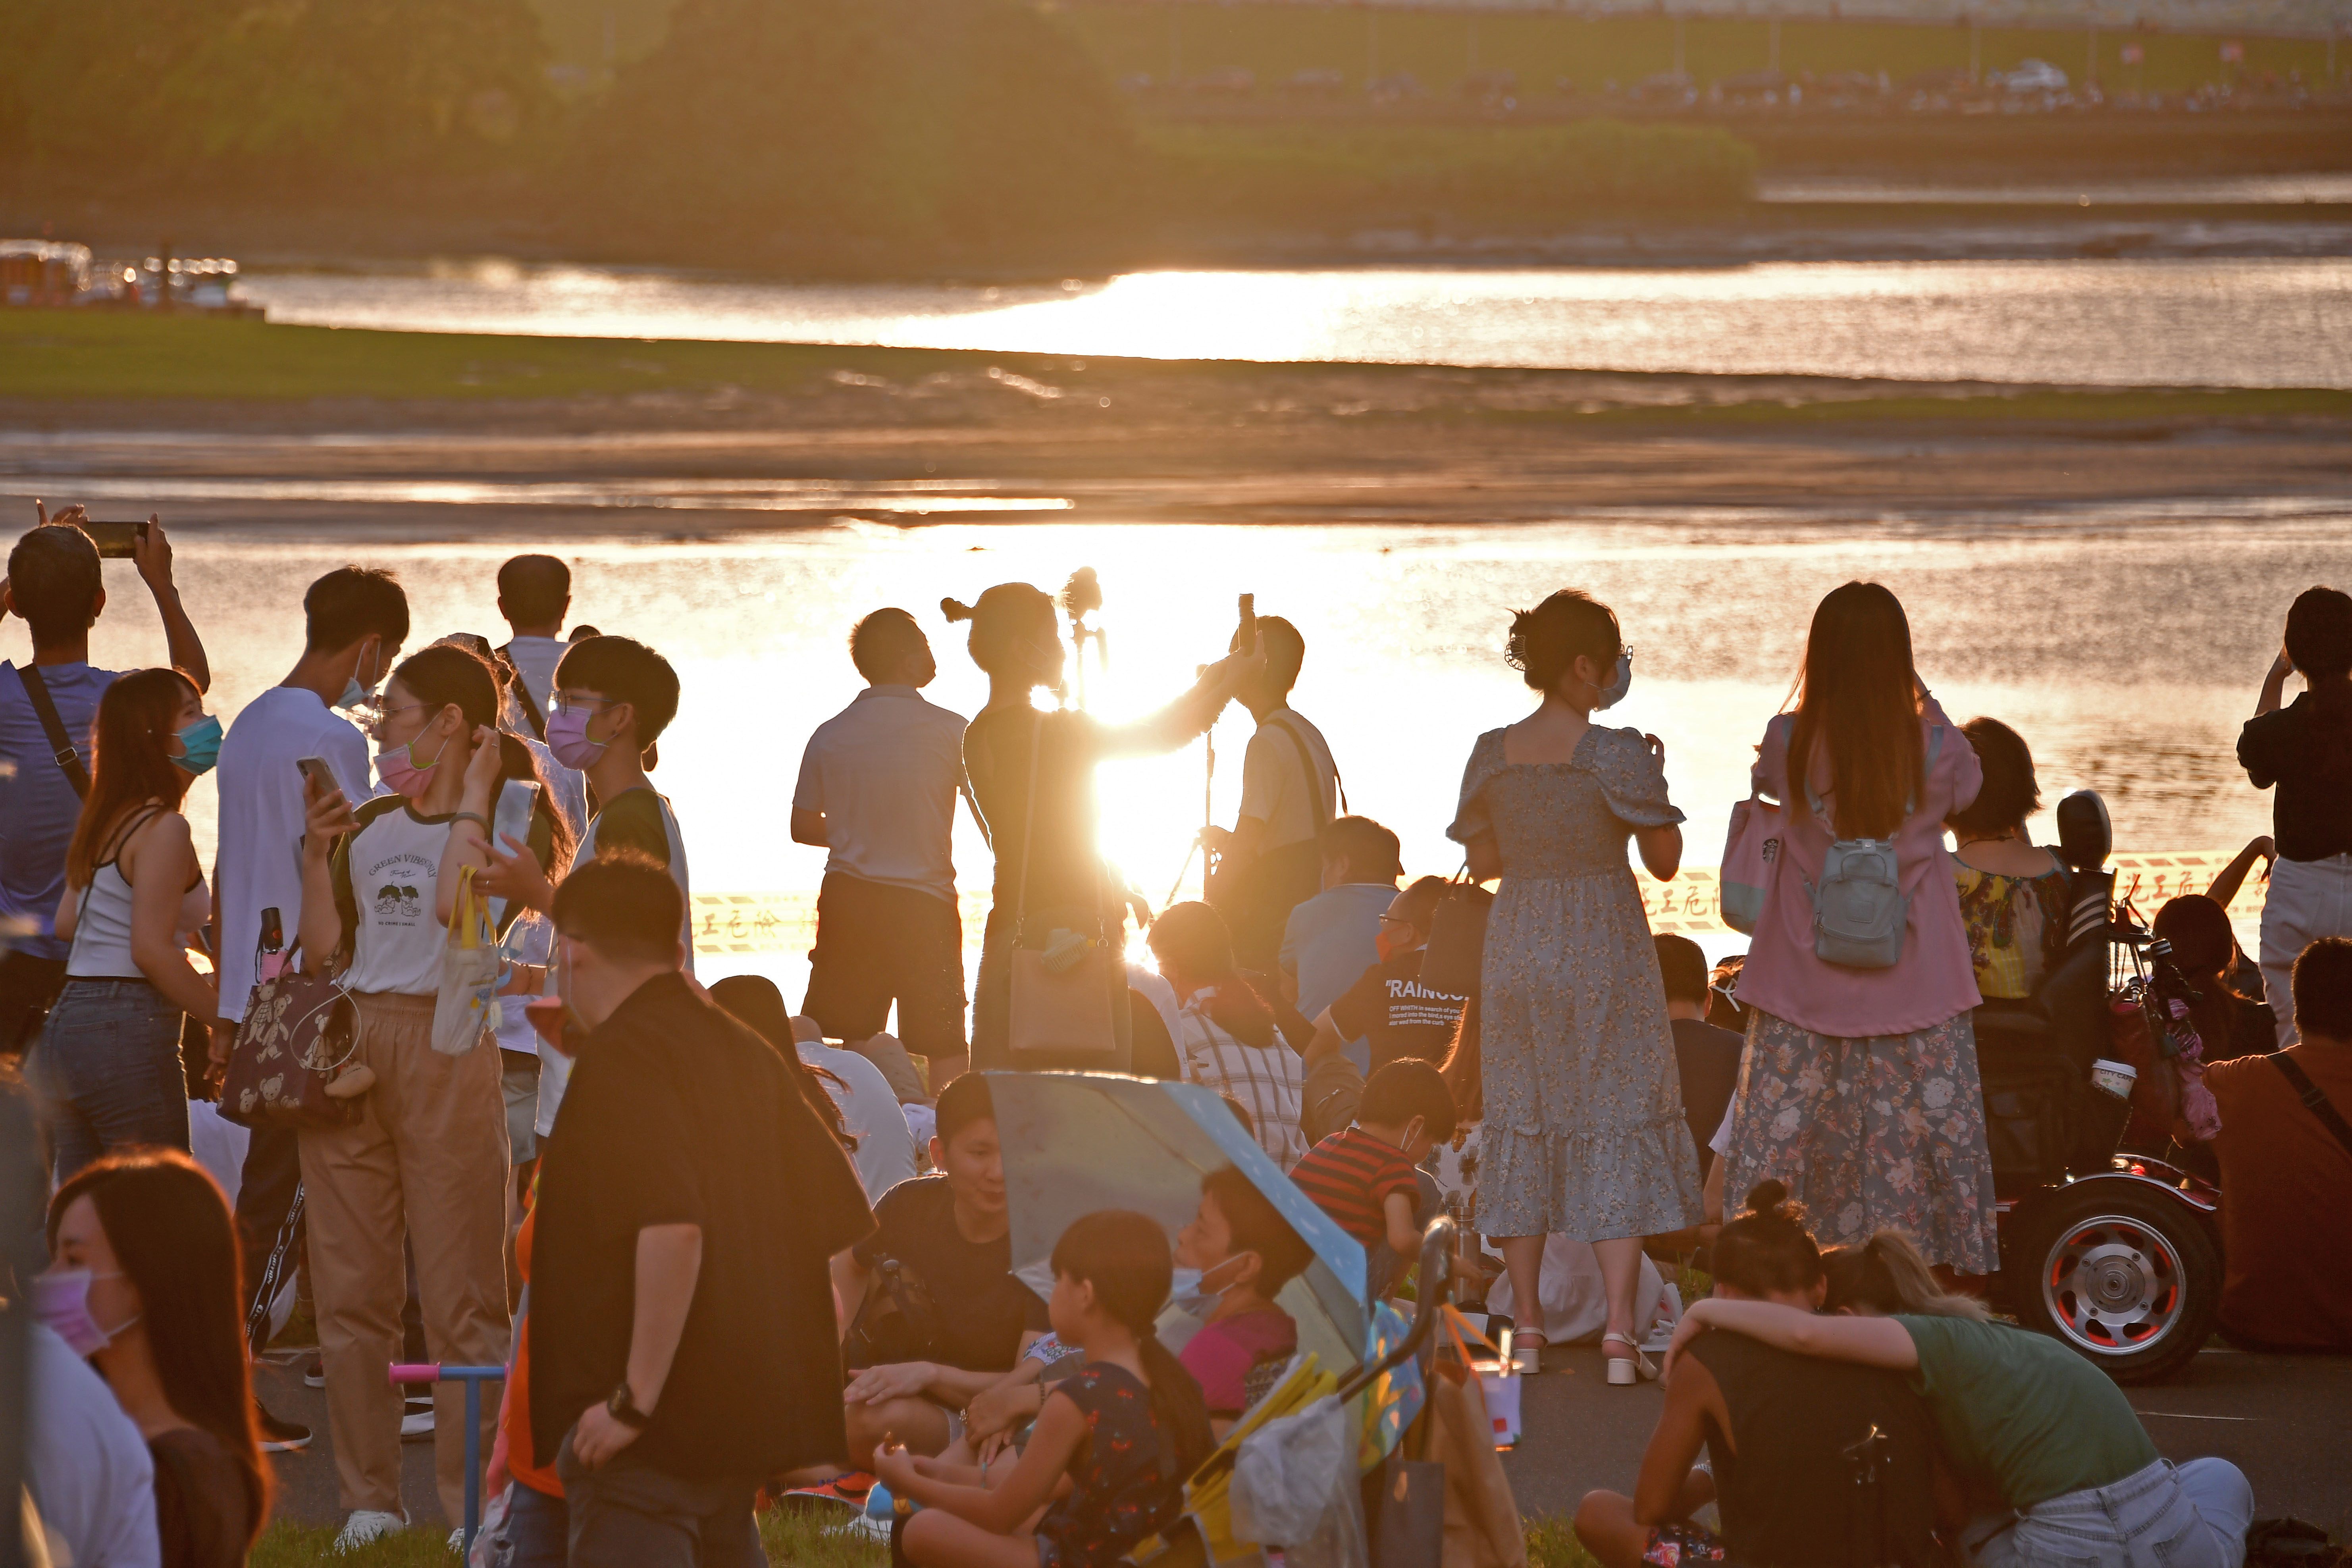 大稻埕悠閒的河岸風情，吸引許多民眾前來捕捉夕陽美景。